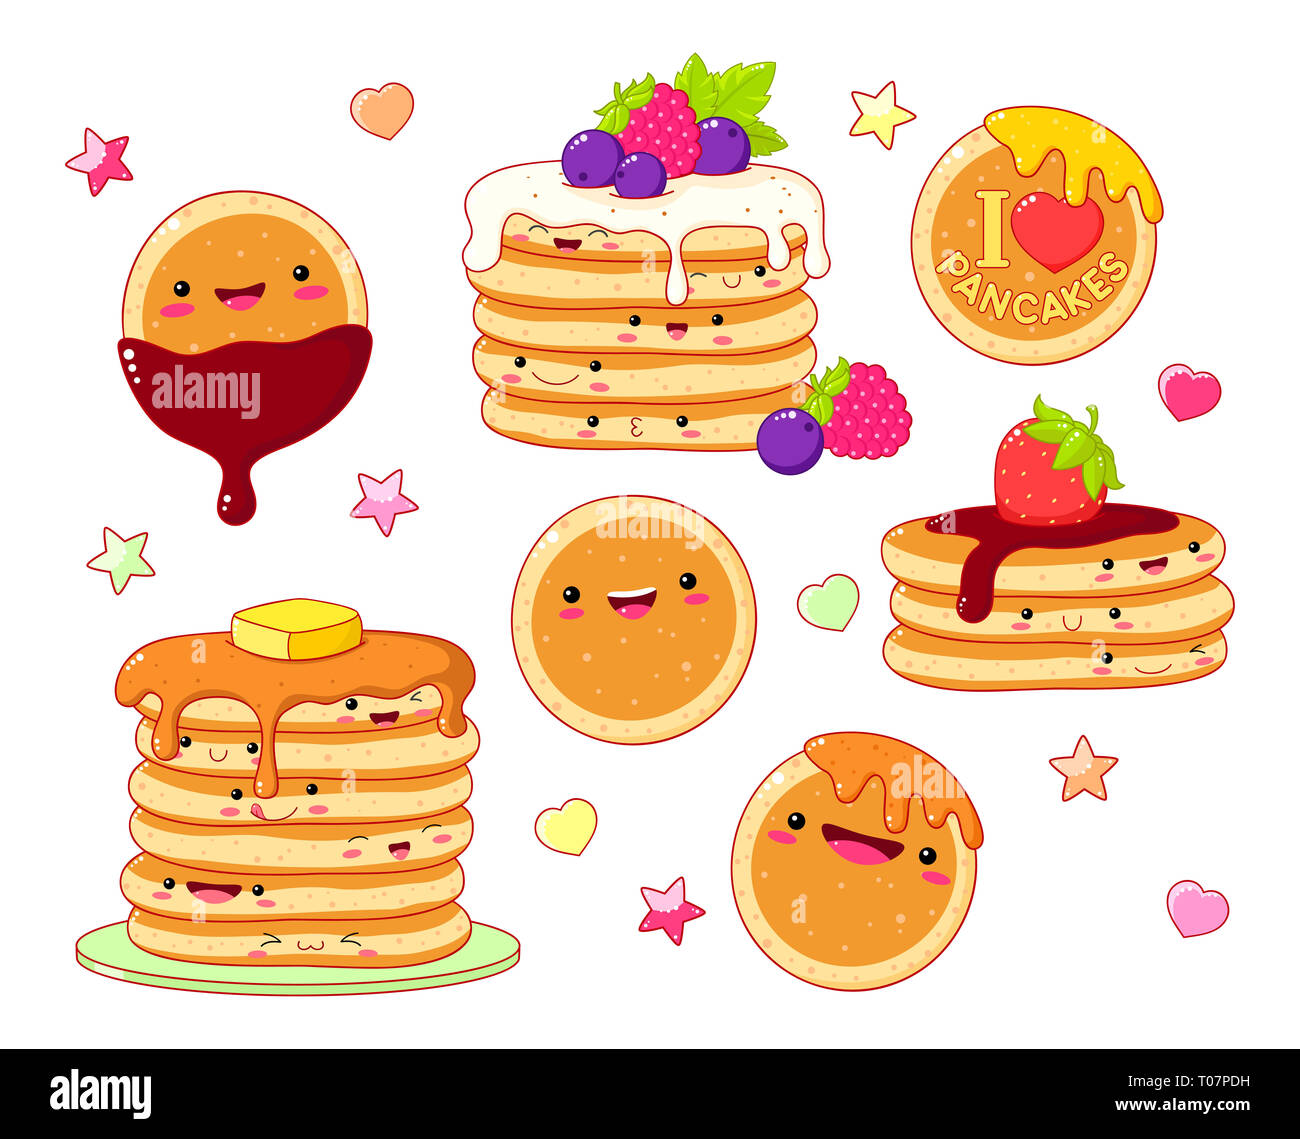 Ensemble d'icônes de crêpe cute kawaii style avec sourire et les joues roses de sweet design. Des crêpes au sirop d'érable, beurre, chocolat et fruits rouges Banque D'Images